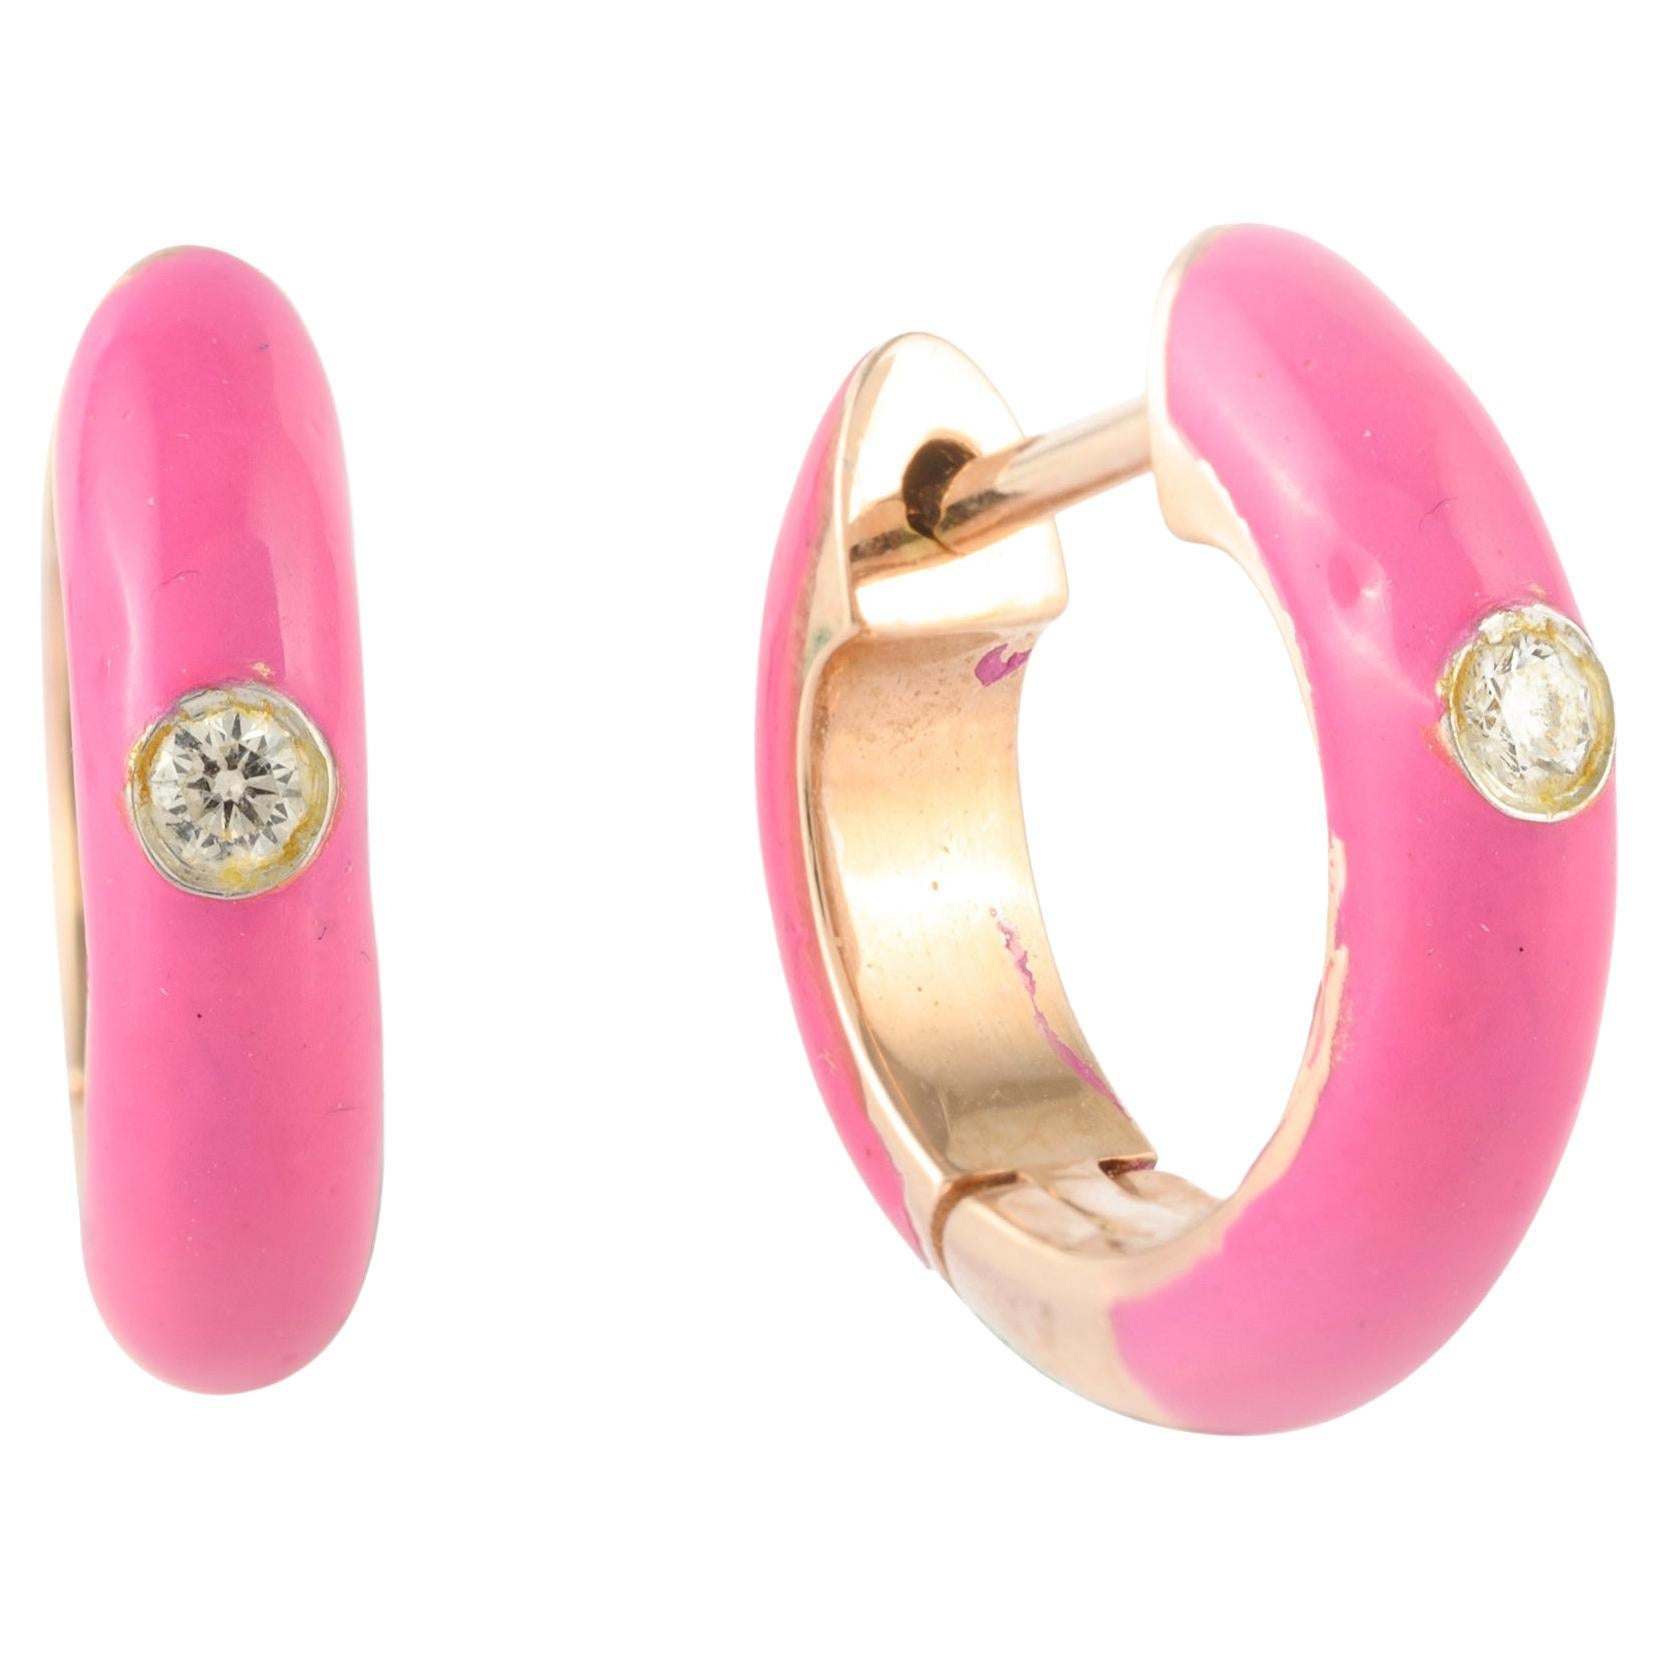 Oval Enamel Earrings Studs - Pink | Nécessité